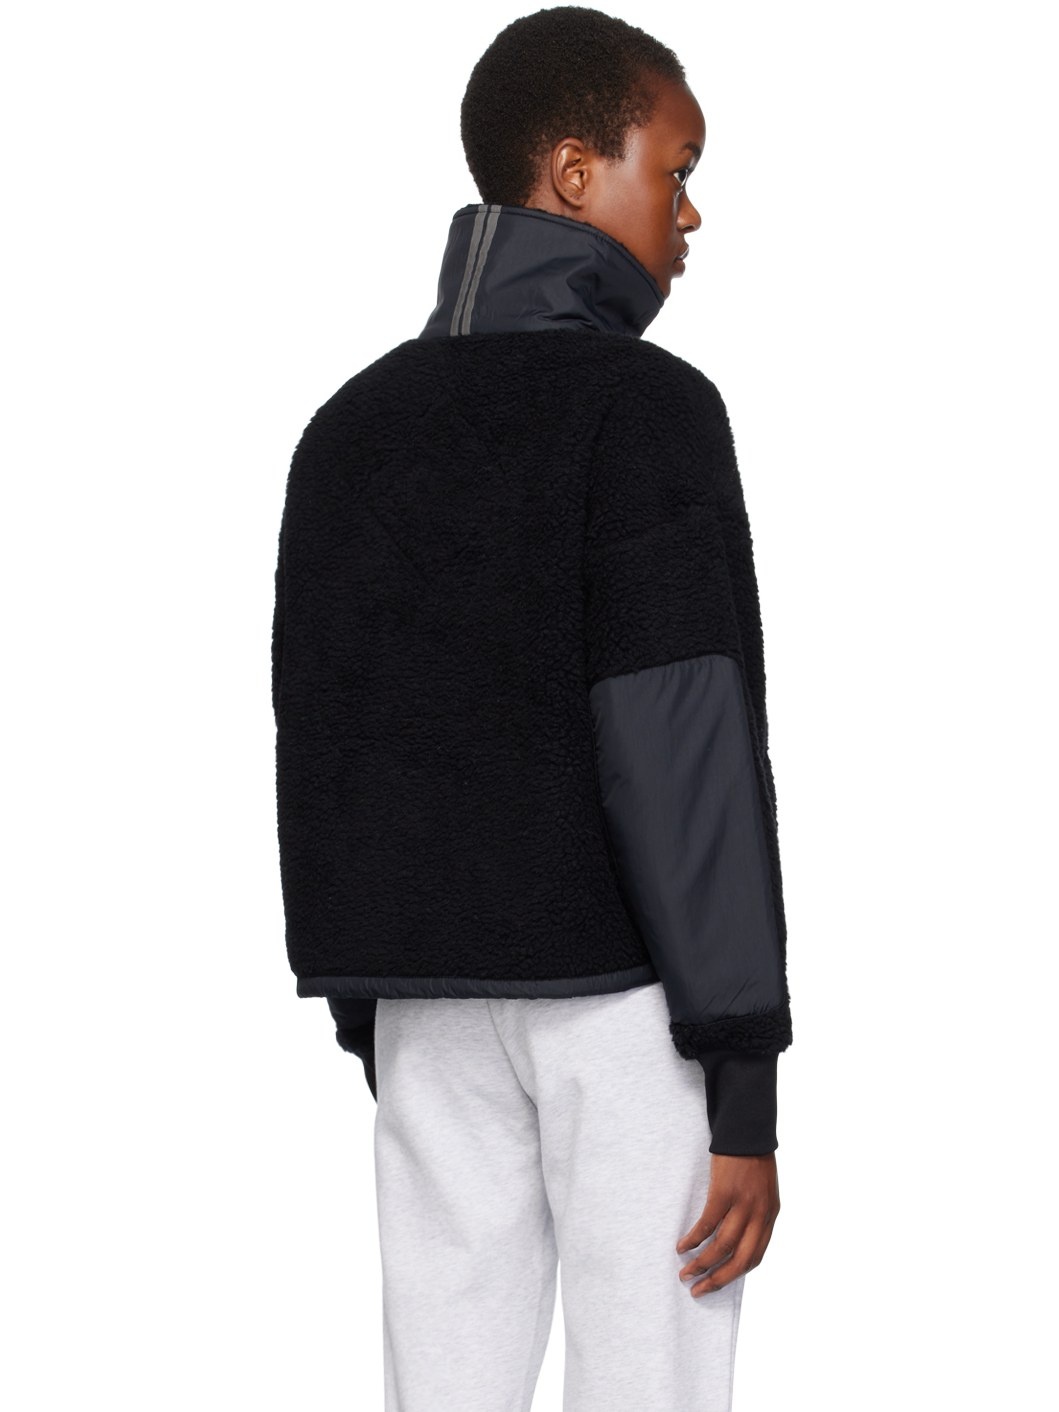 Black Half-Zip Sweatshirt - 3